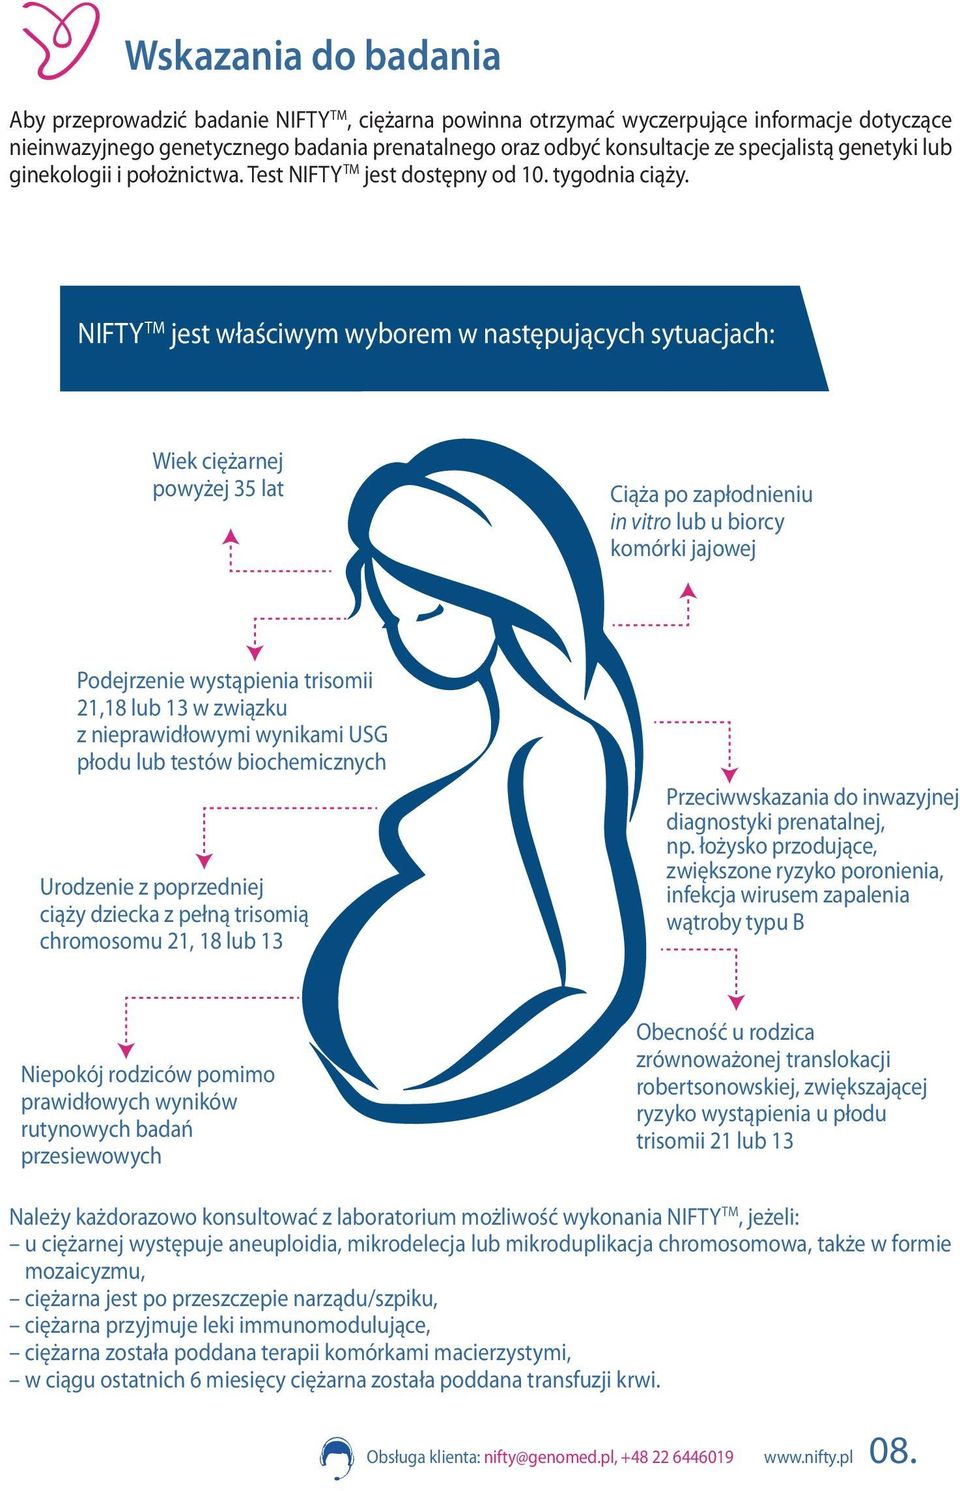 NIFTY TM jest właściwym wyborem w następujących sytuacjach: Wiek ciężarnej powyżej 35 lat Ciąża po zapłodnieniu in vitro lub u biorcy komórki jajowej Podejrzenie wystąpienia trisomii 21,18 lub 13 w